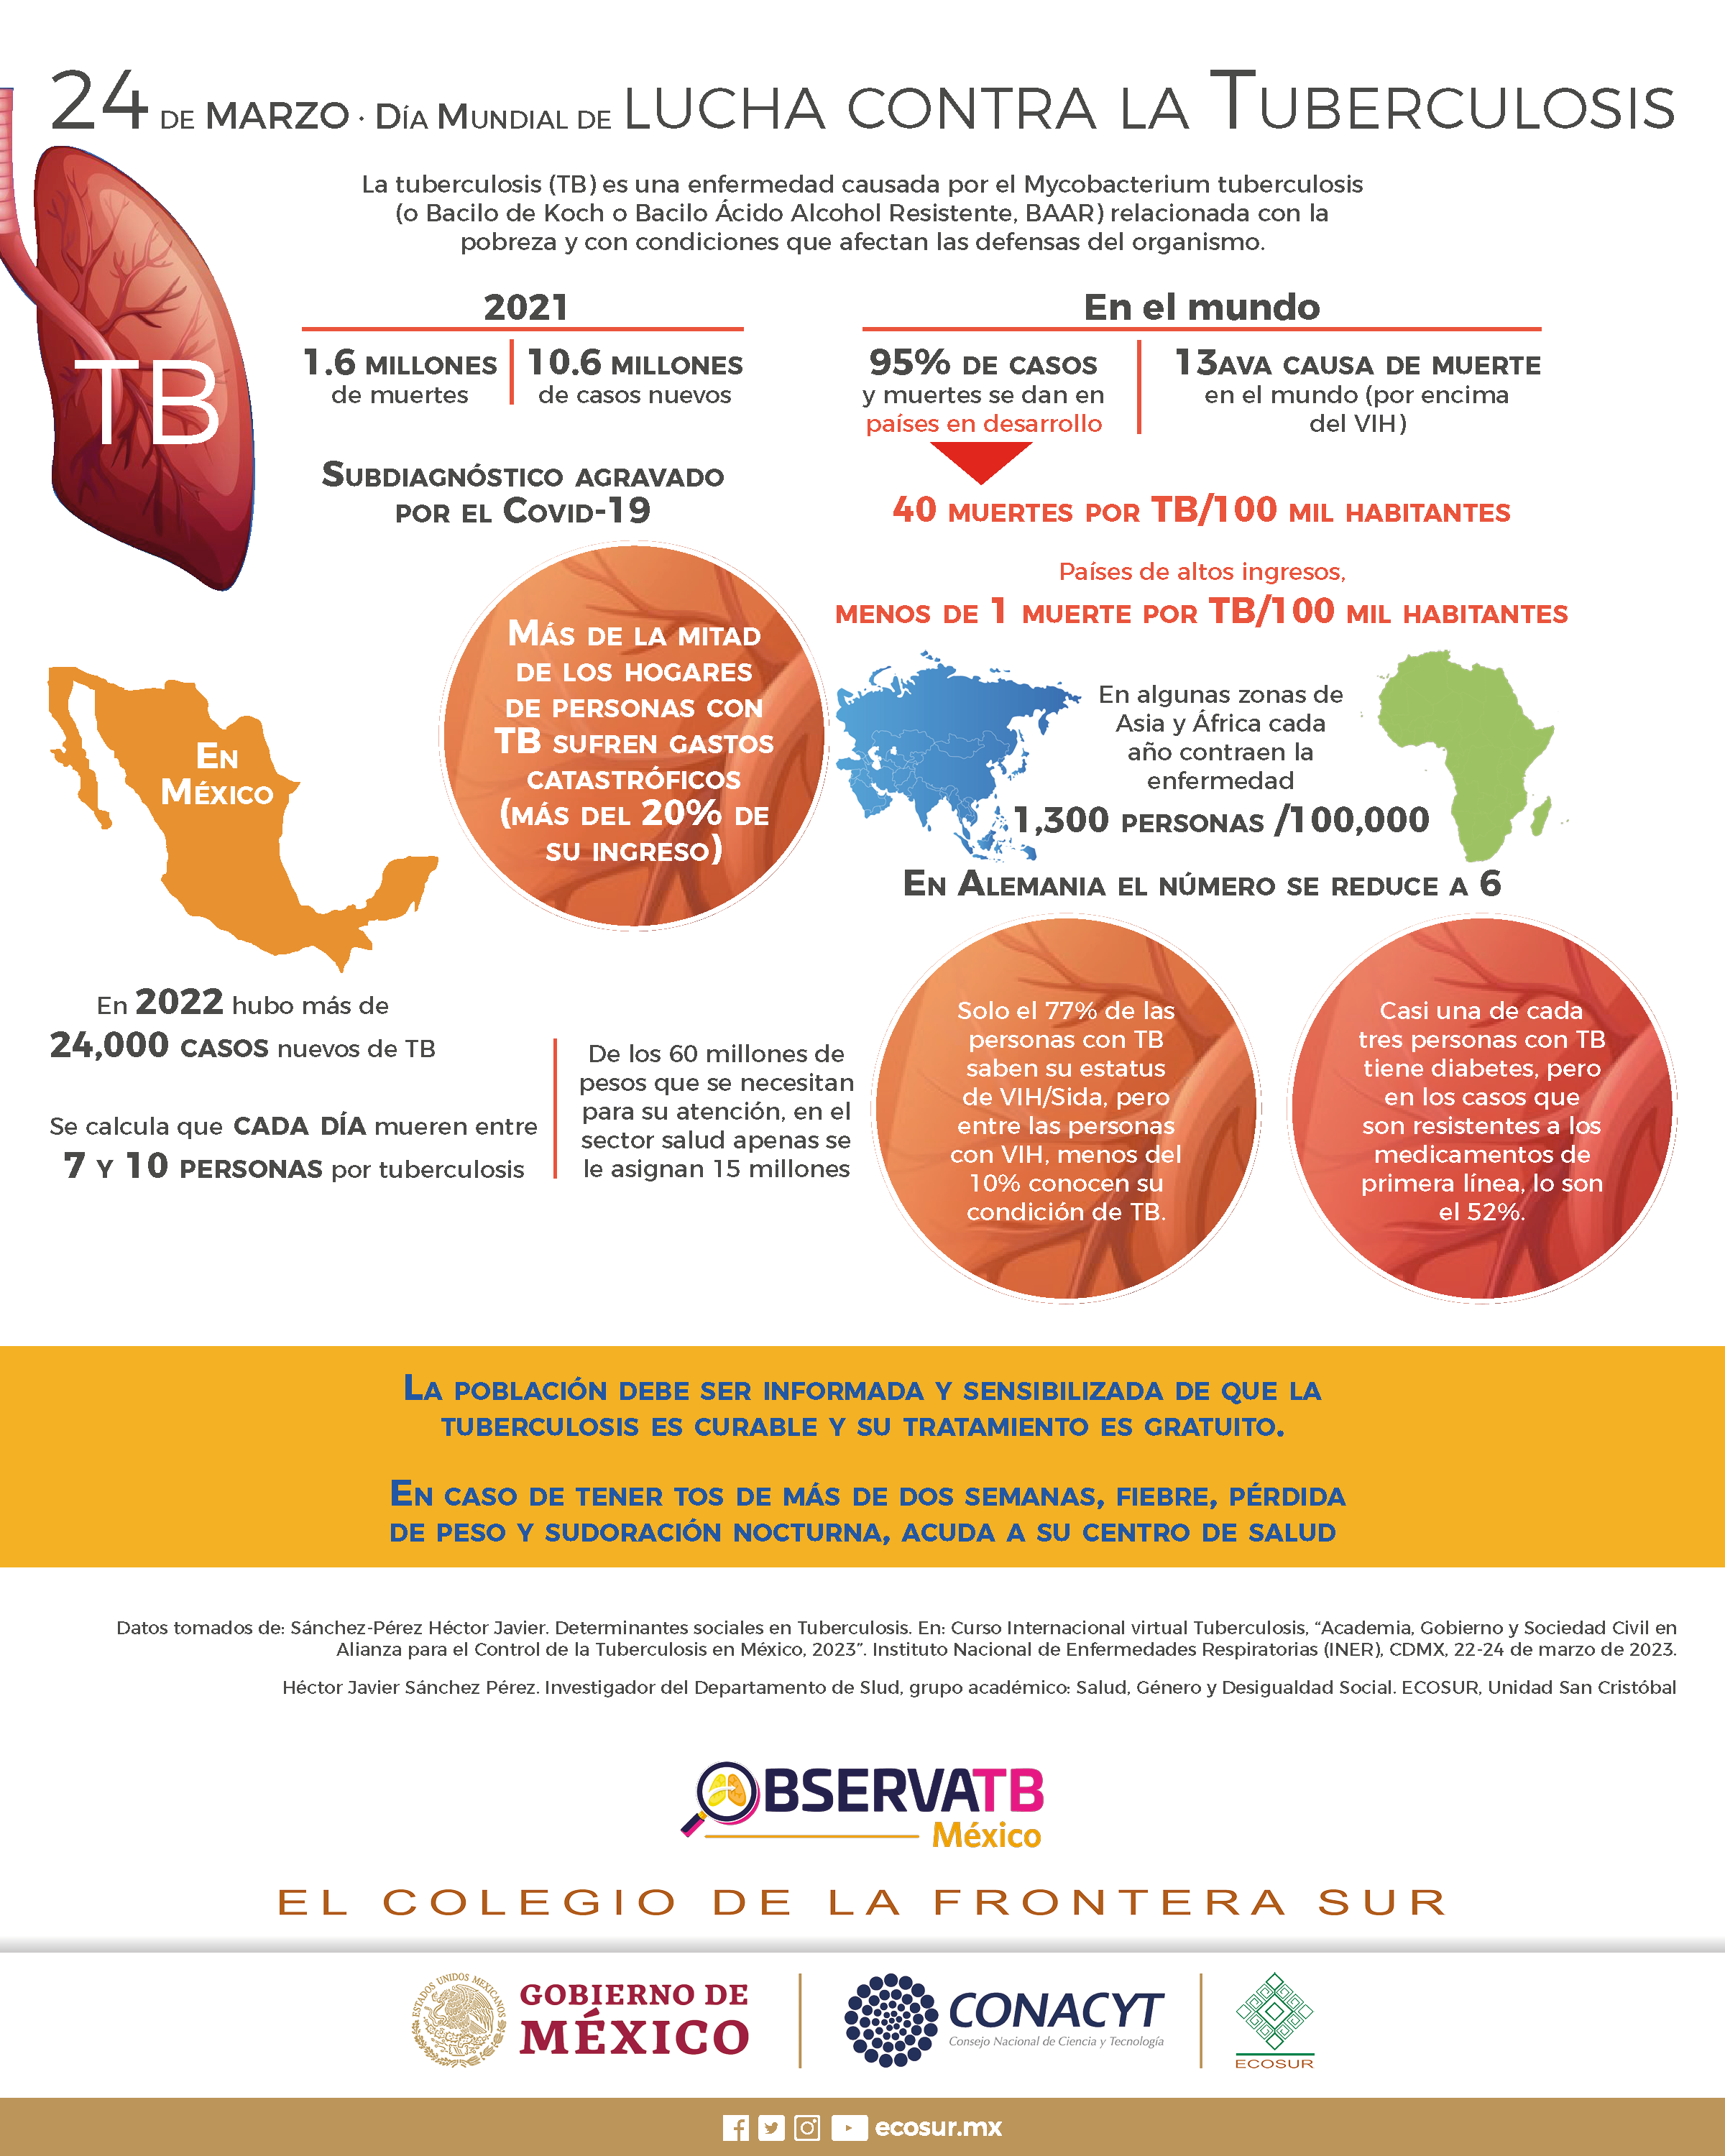 Día mundial de lucha contra la tuberculosis